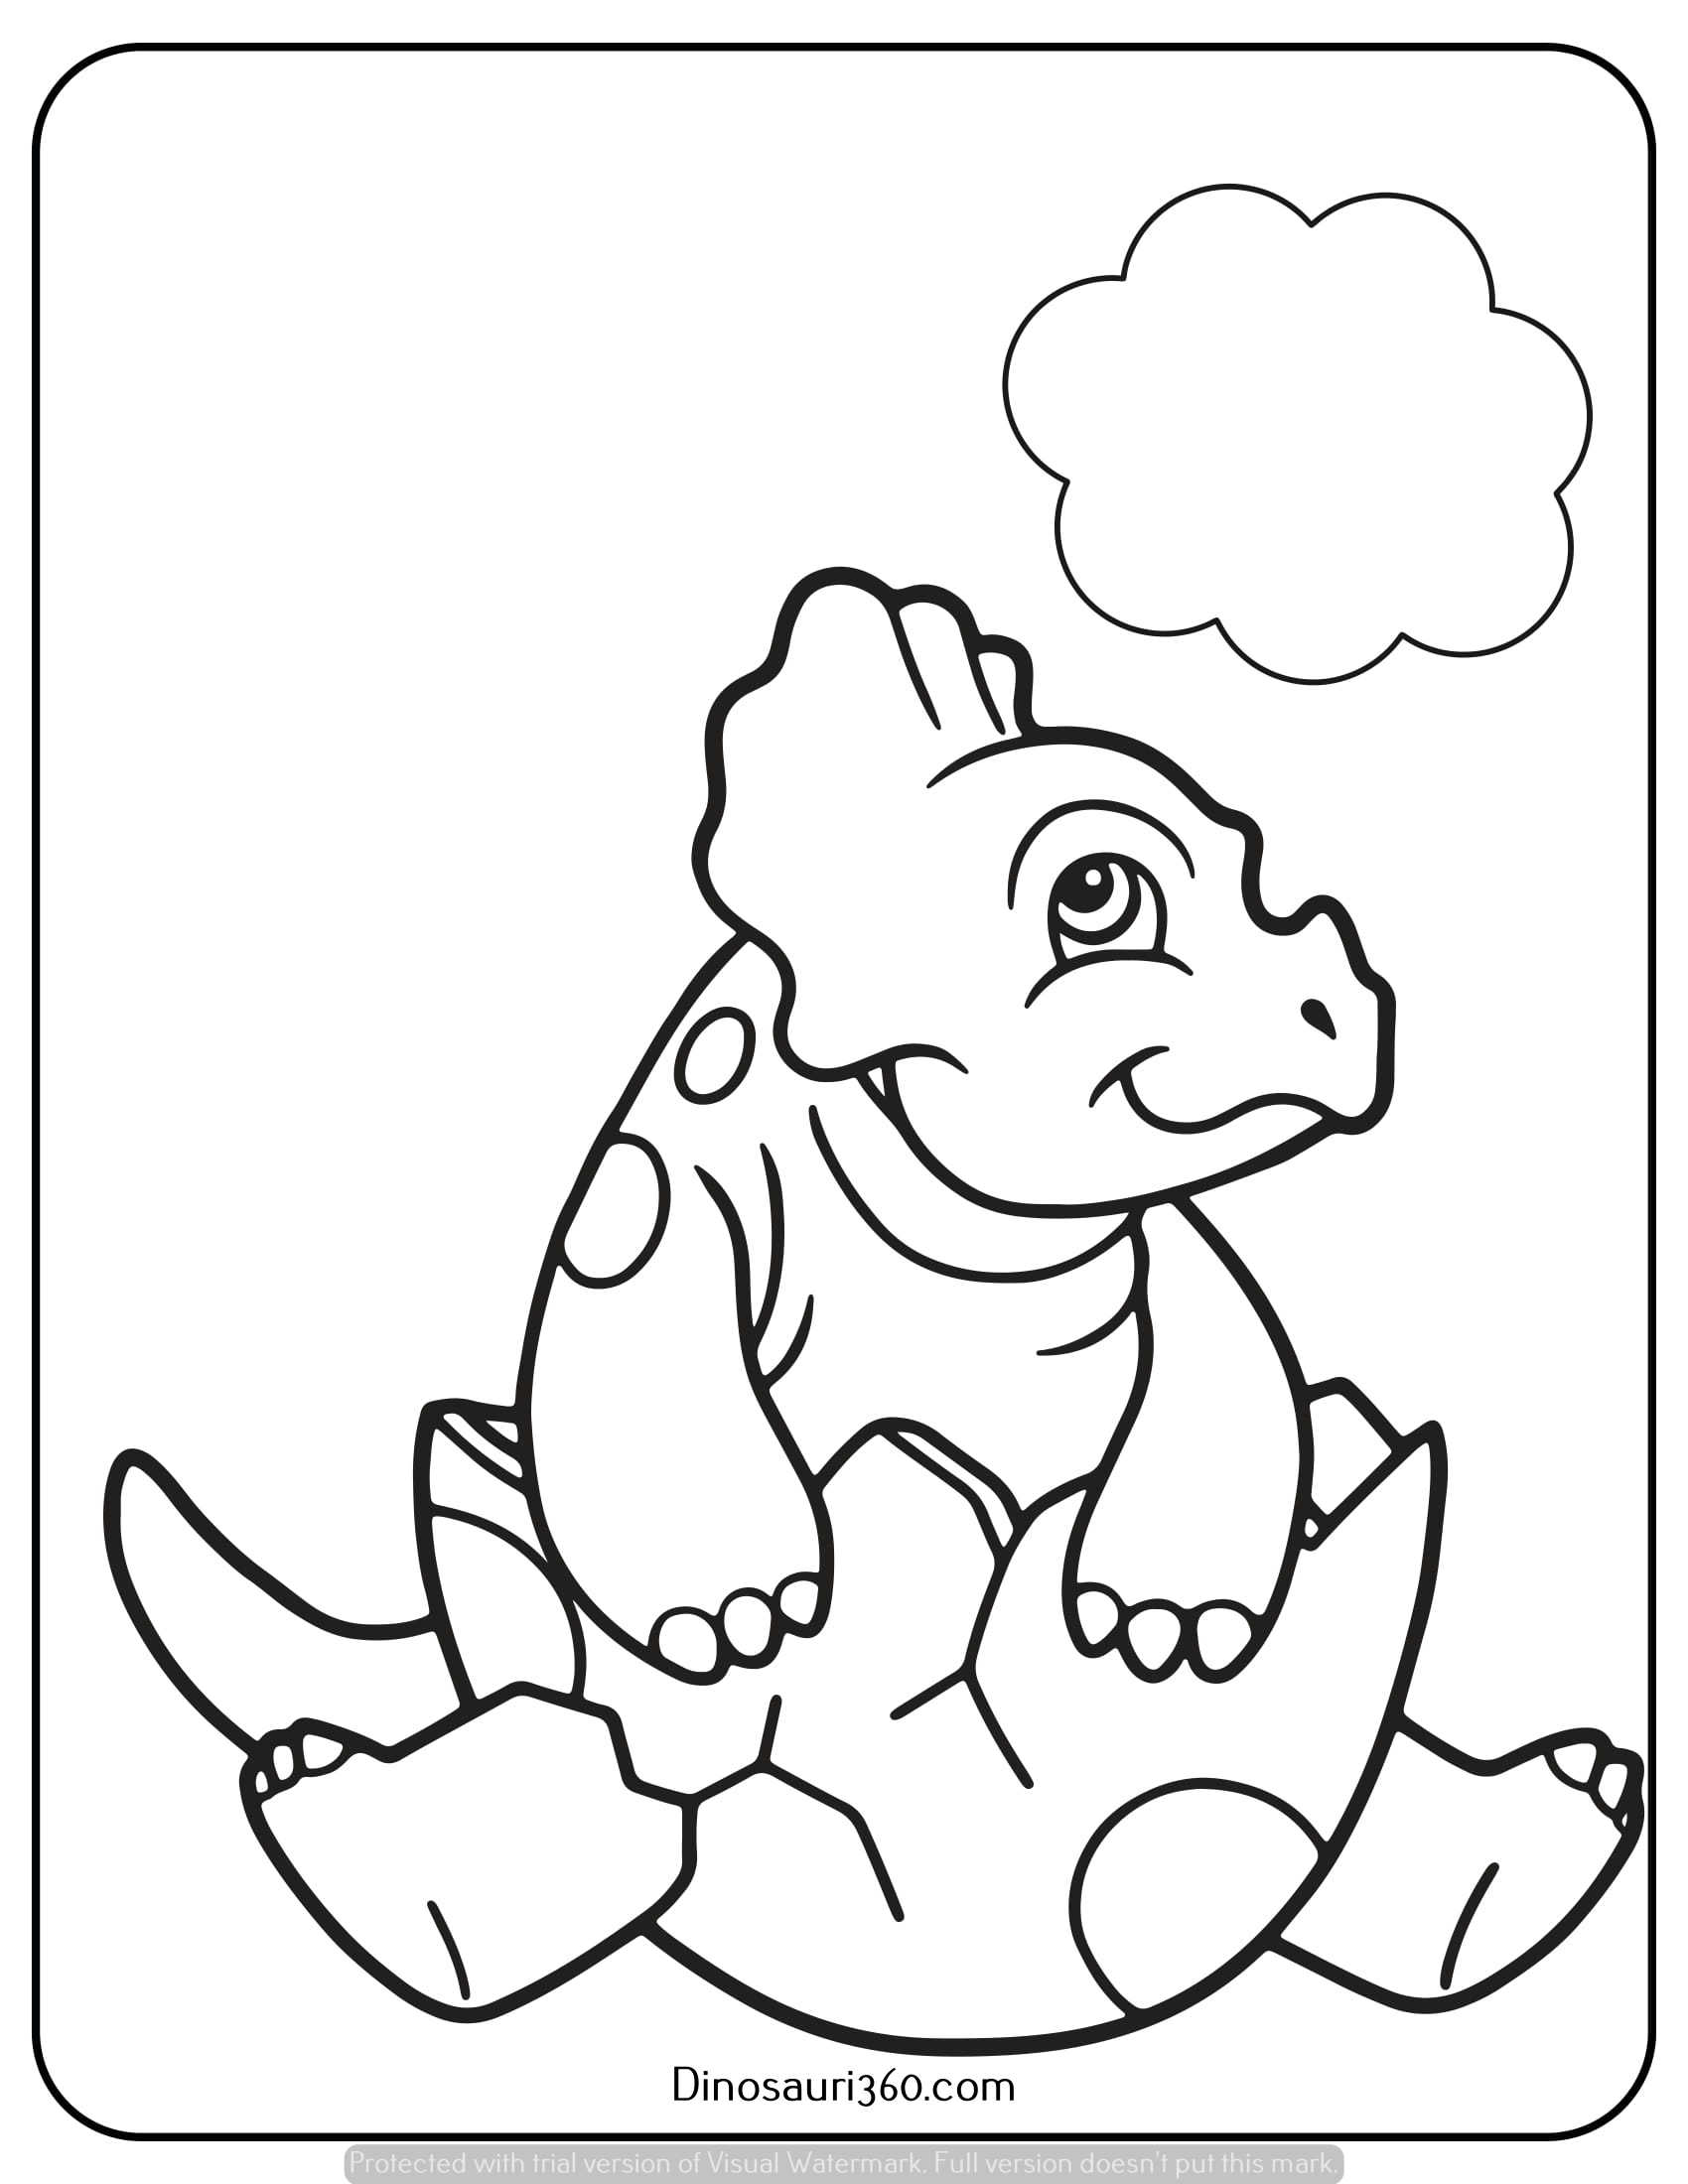 Dinosauri da colorare e stampare gratis (6)